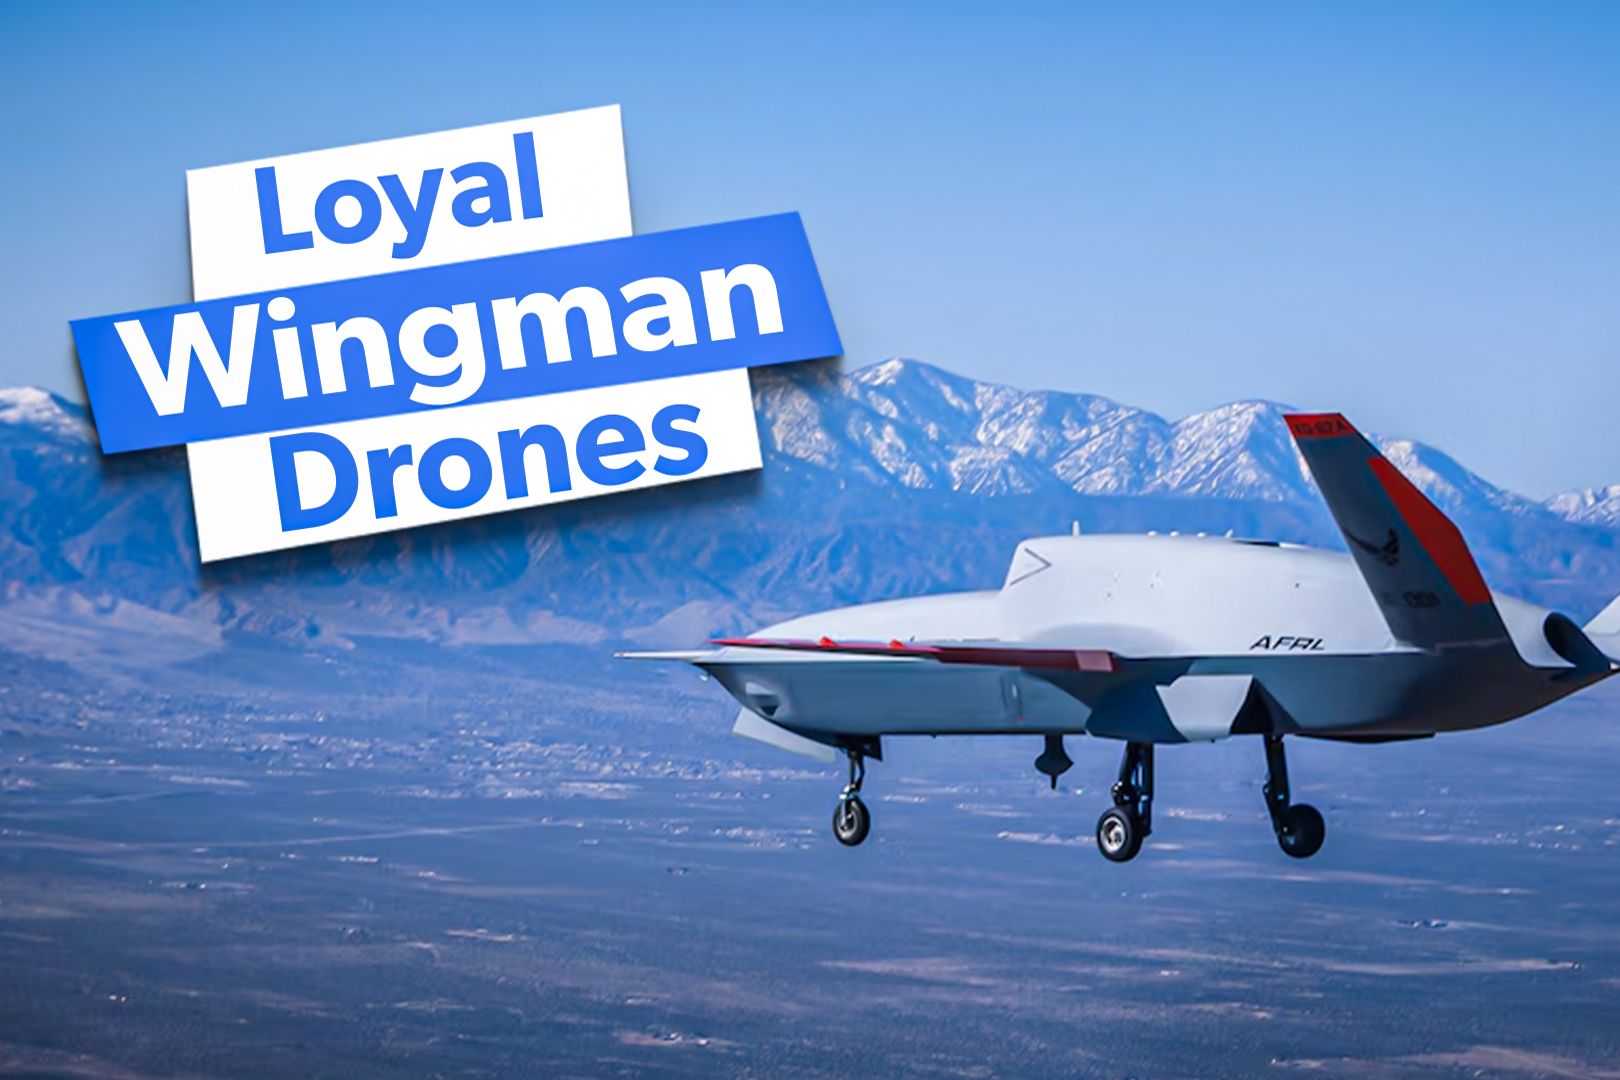 Loyal Wingman Drones Custom Thumbnail